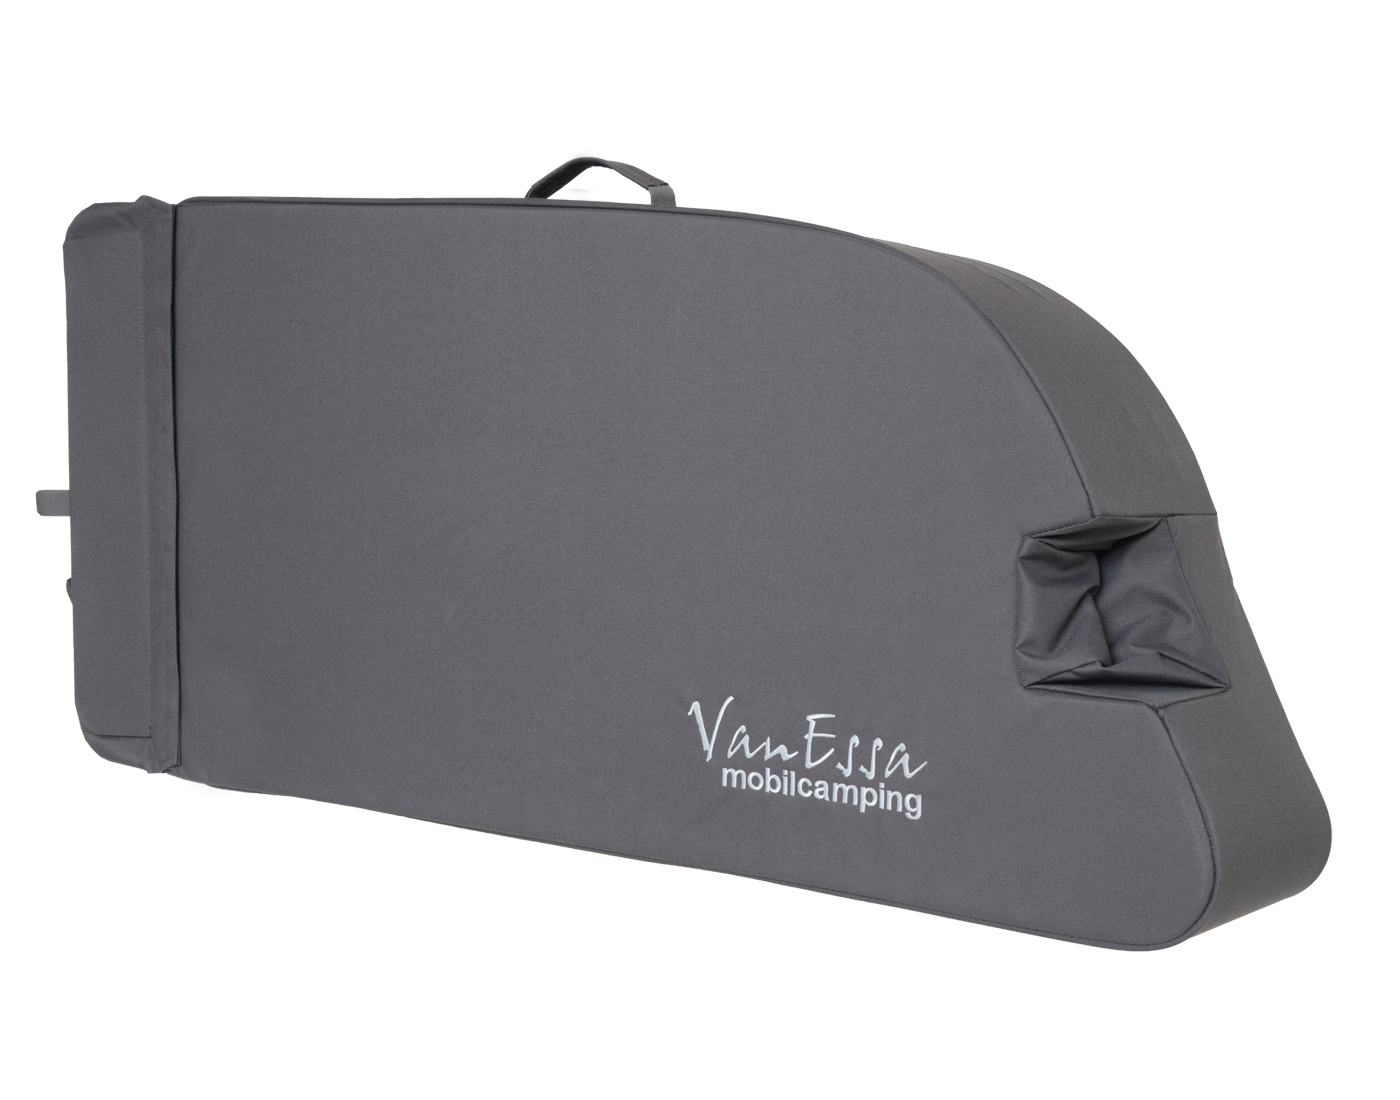 VanEssa Packtaschen- unser optimal genutzter Stauraum - VanEssa mobilcamping